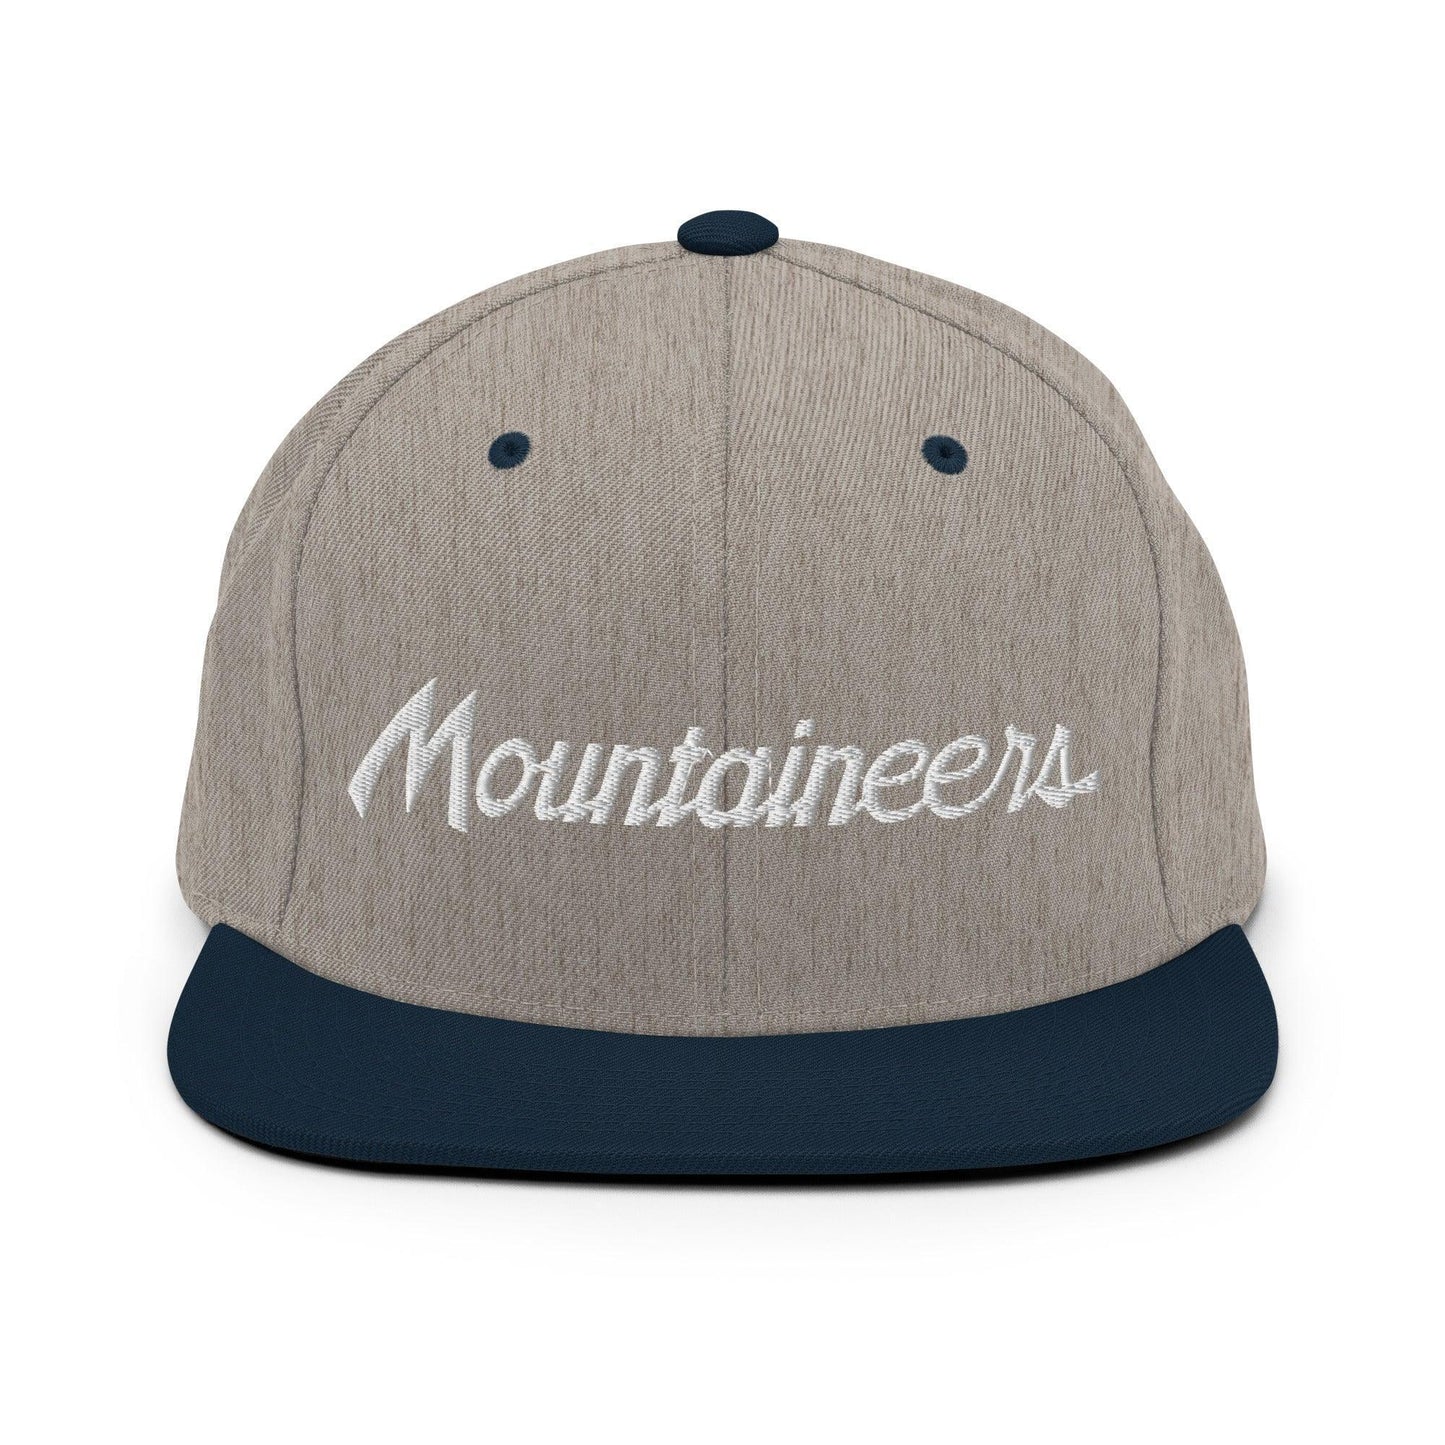 Mountaineers School Mascot Script Snapback Hat Heather Grey/ Navy